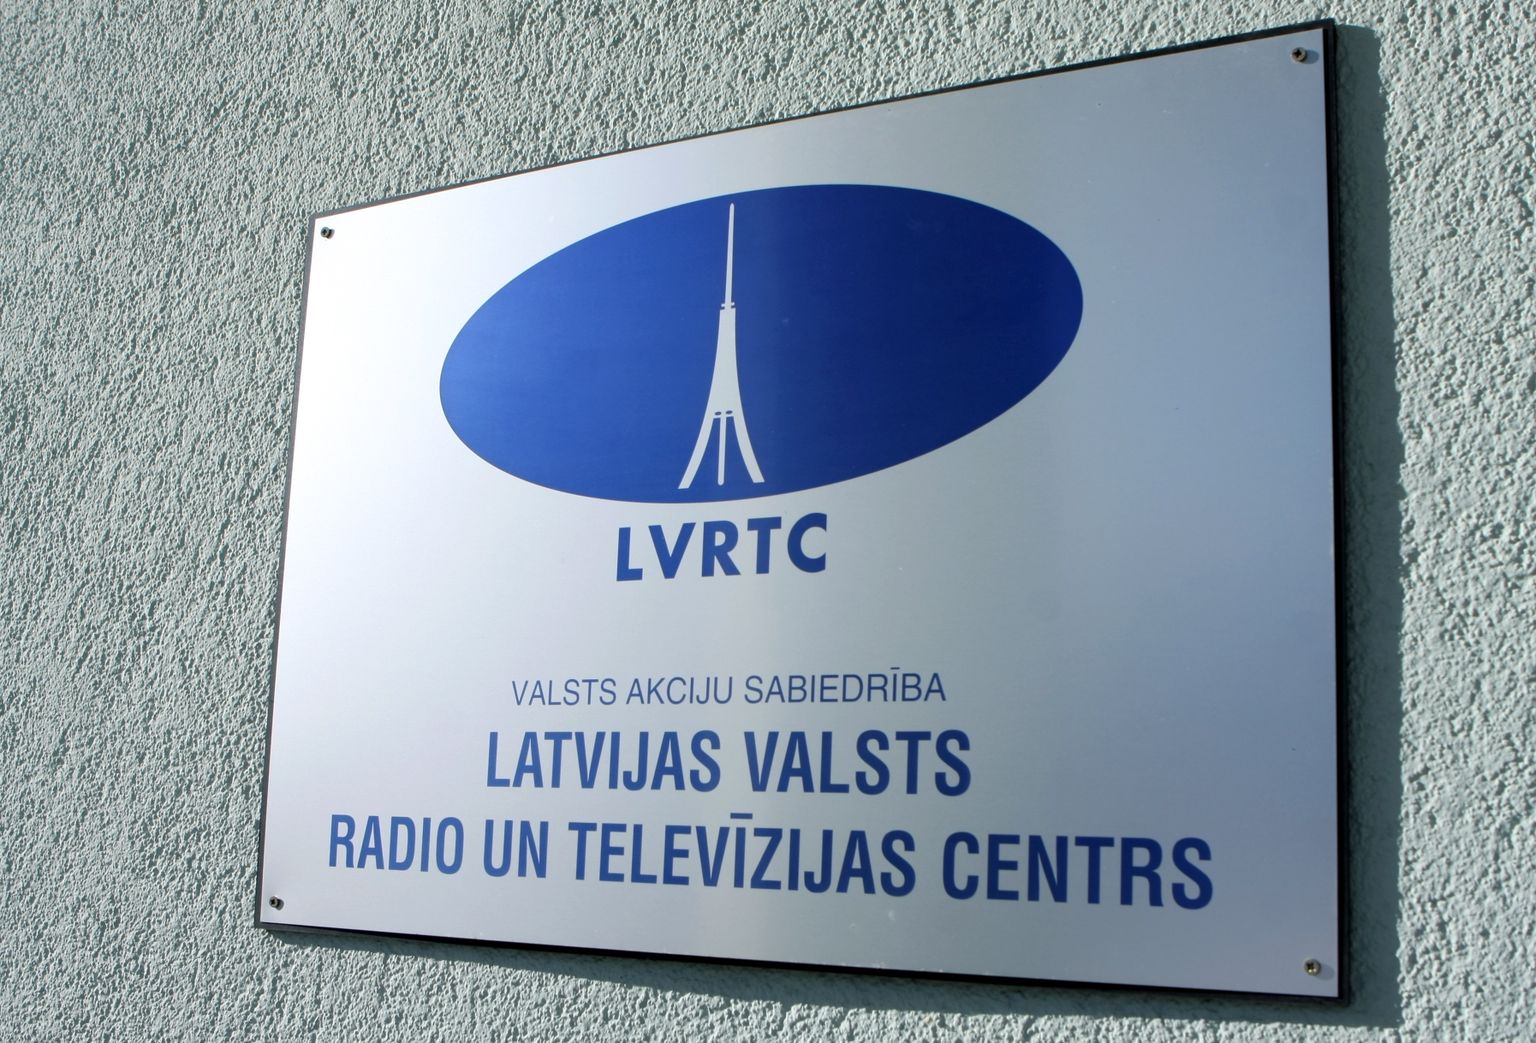 VAS "Latvijas Valsts radio un televīzijas centrs" logo.